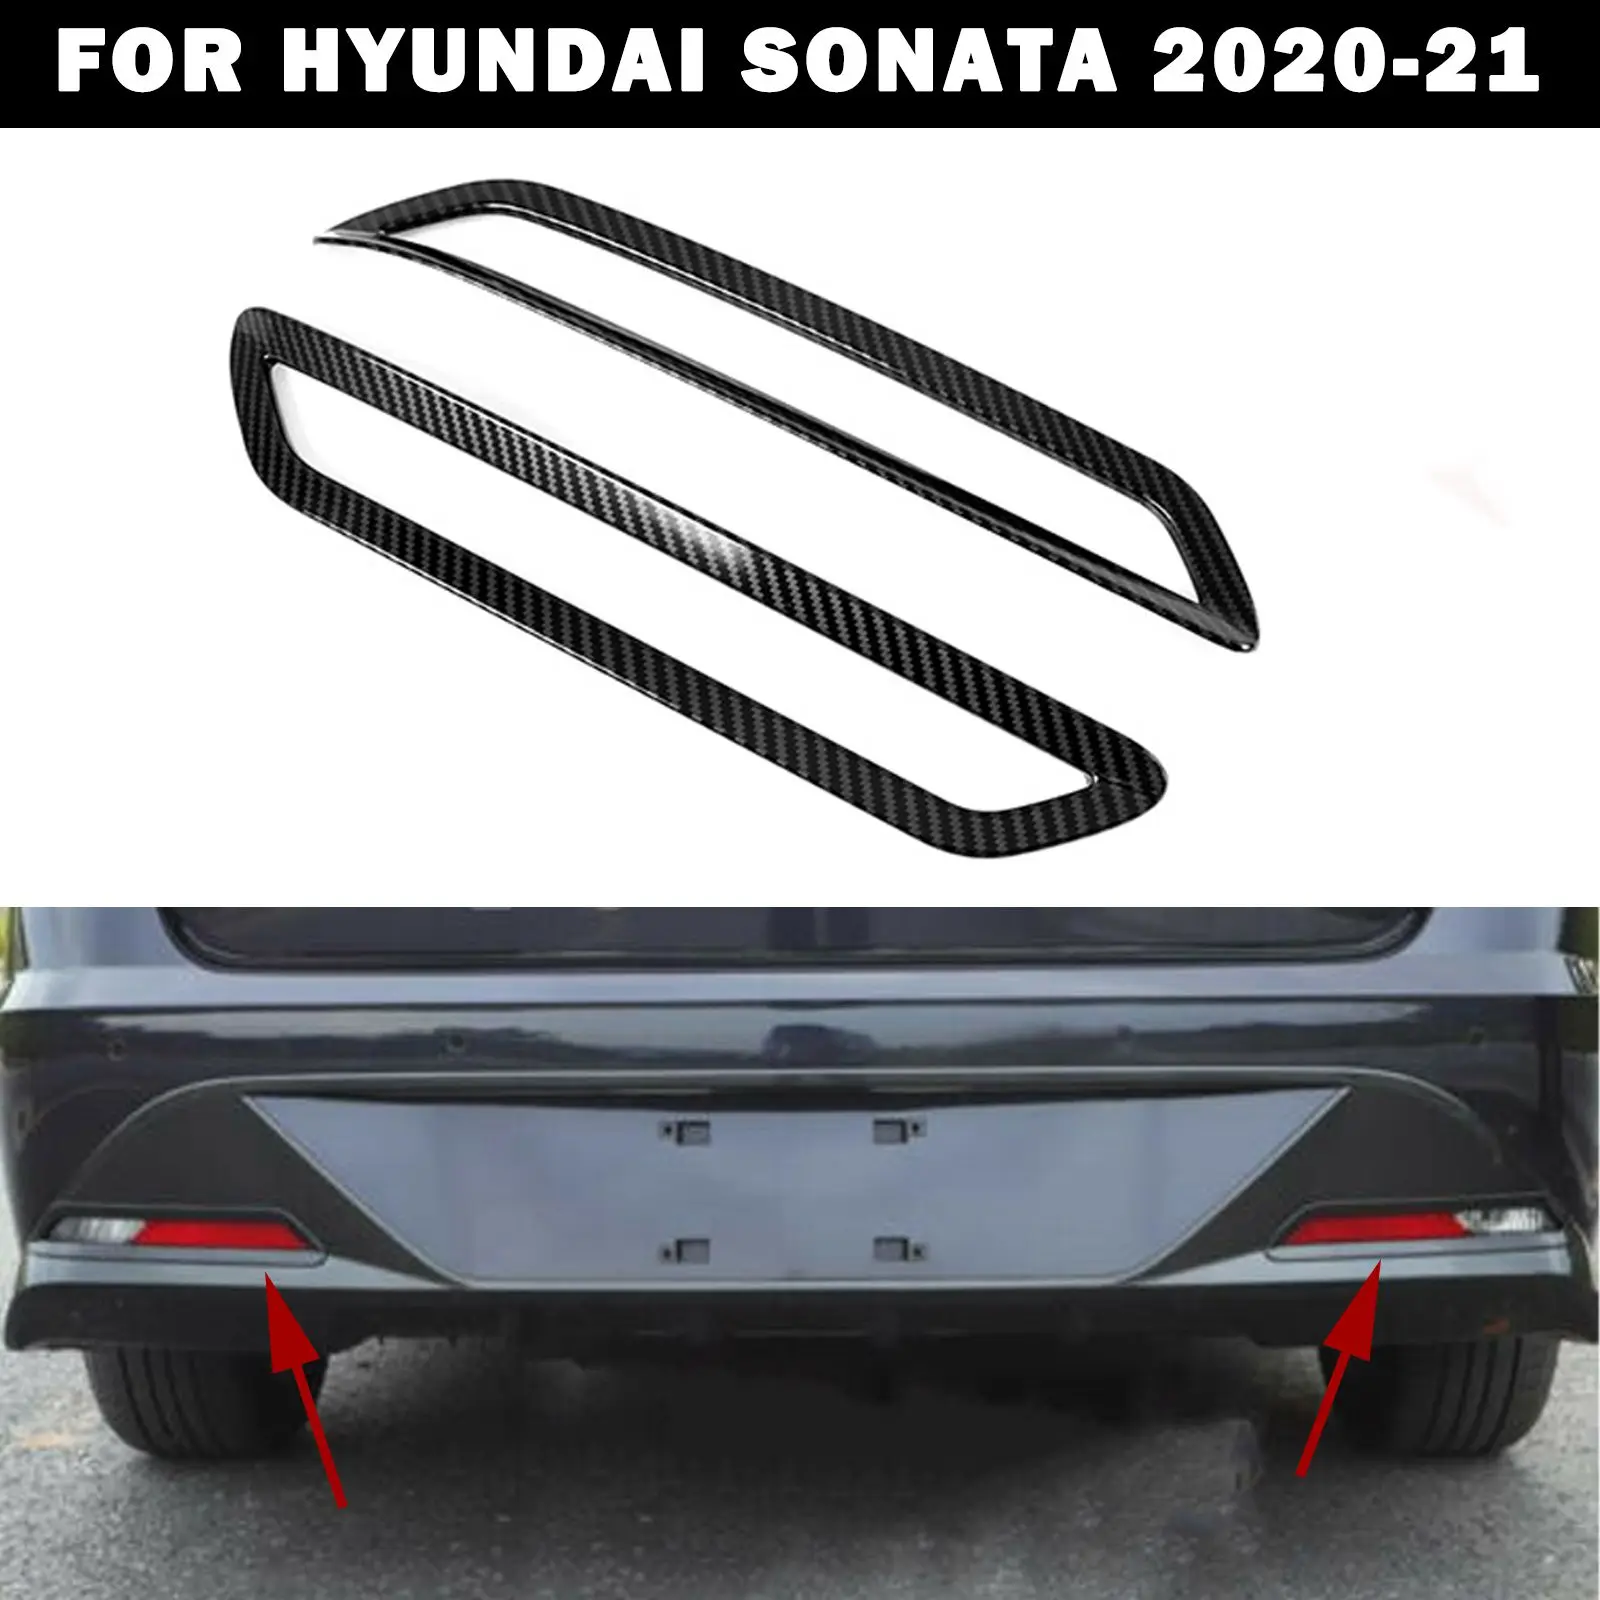 

Задние противотуманные фары для Hyundai Sonata 2020-2021, хромированные задние противотуманные фары из АБС-пластика, аксессуары для стайлинга автомобиля